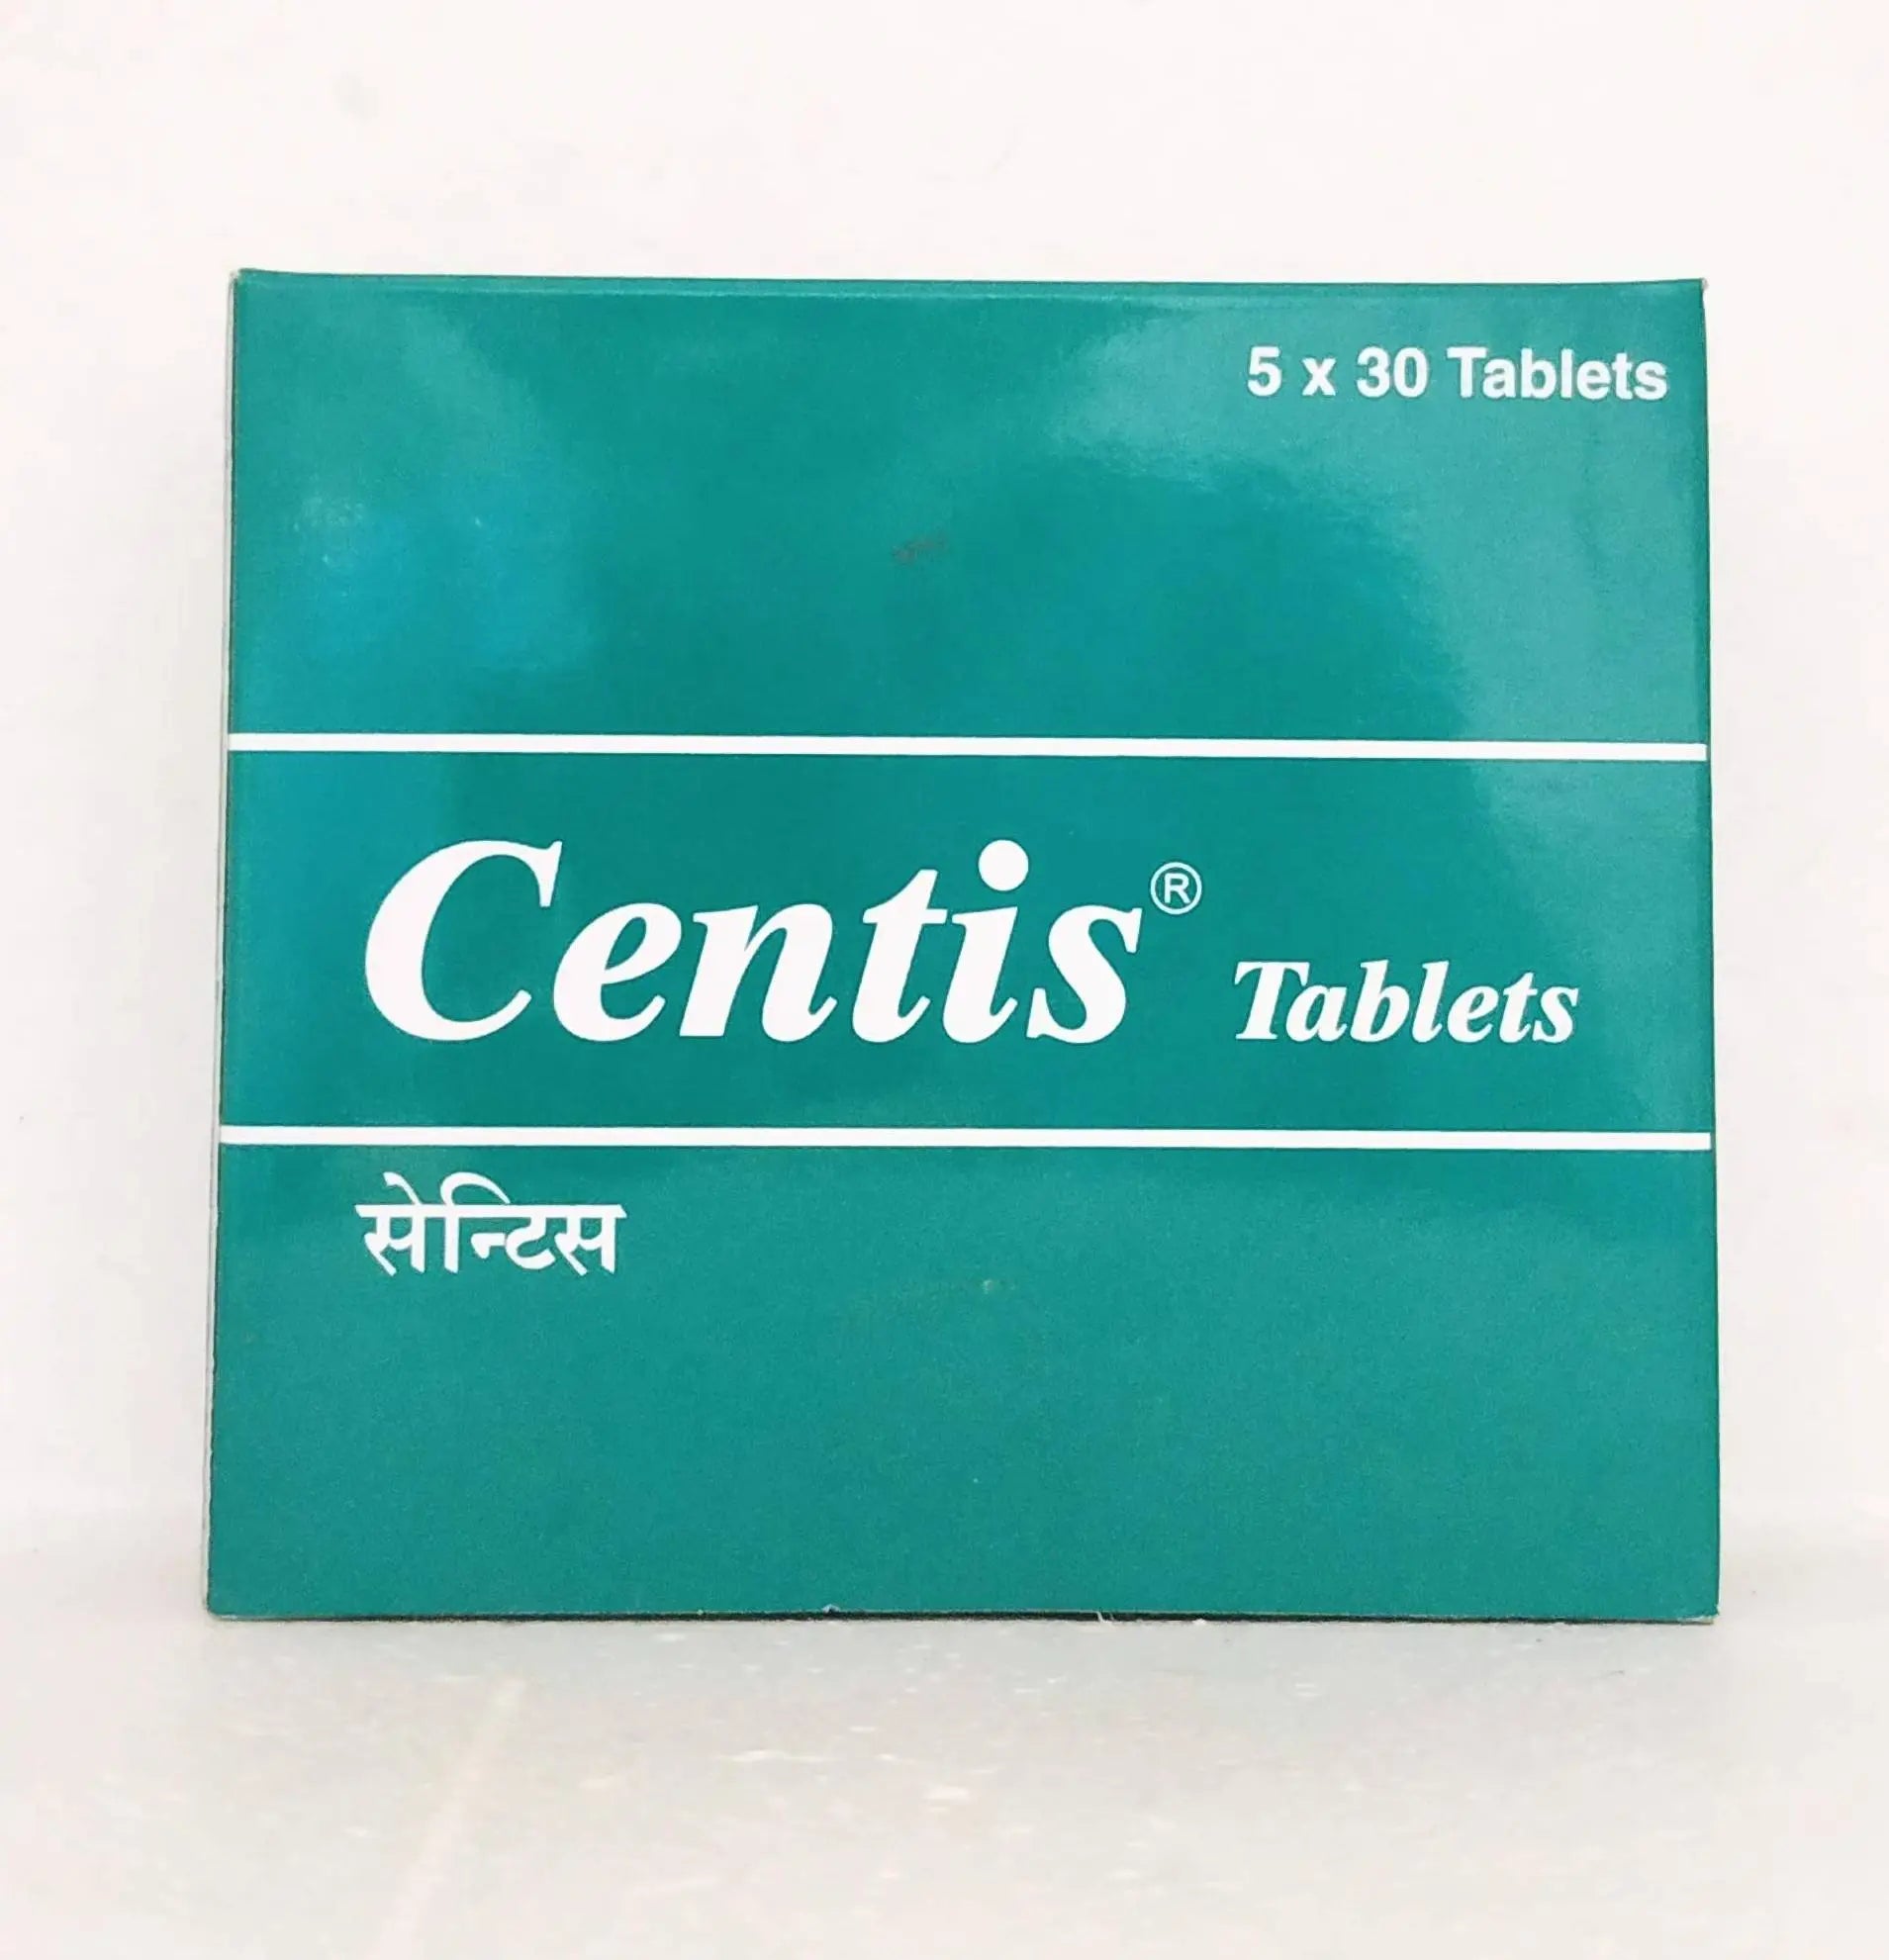 Centis tablets - 30tablets Team